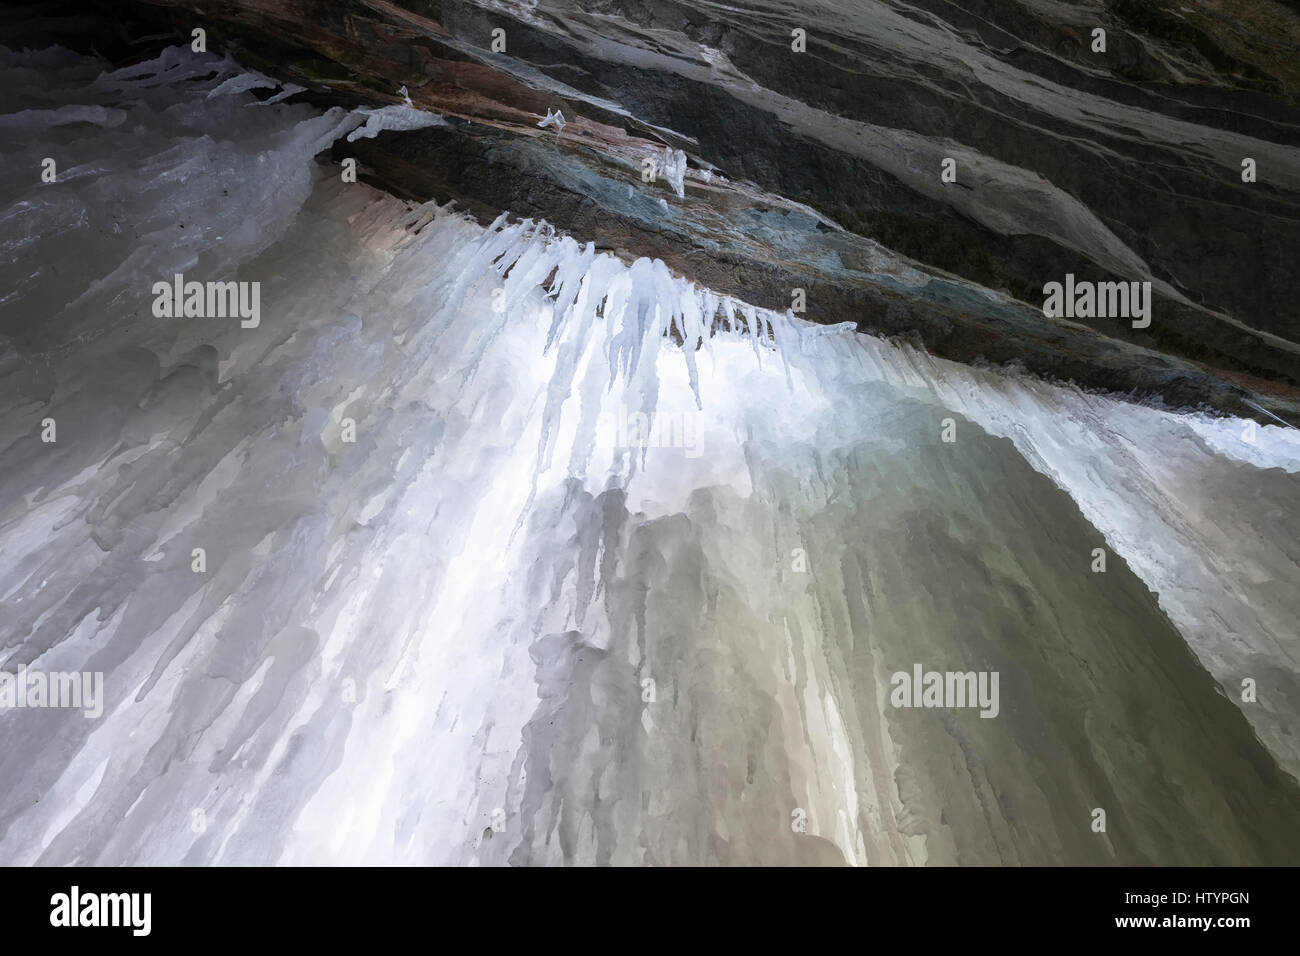 Jusqu'à à l'accumulation de glace à l'intérieur d'une grotte de glace formée par Buttermilk Falls au cours de l'hiver, à Hamilton, Ontario, Canada. Banque D'Images